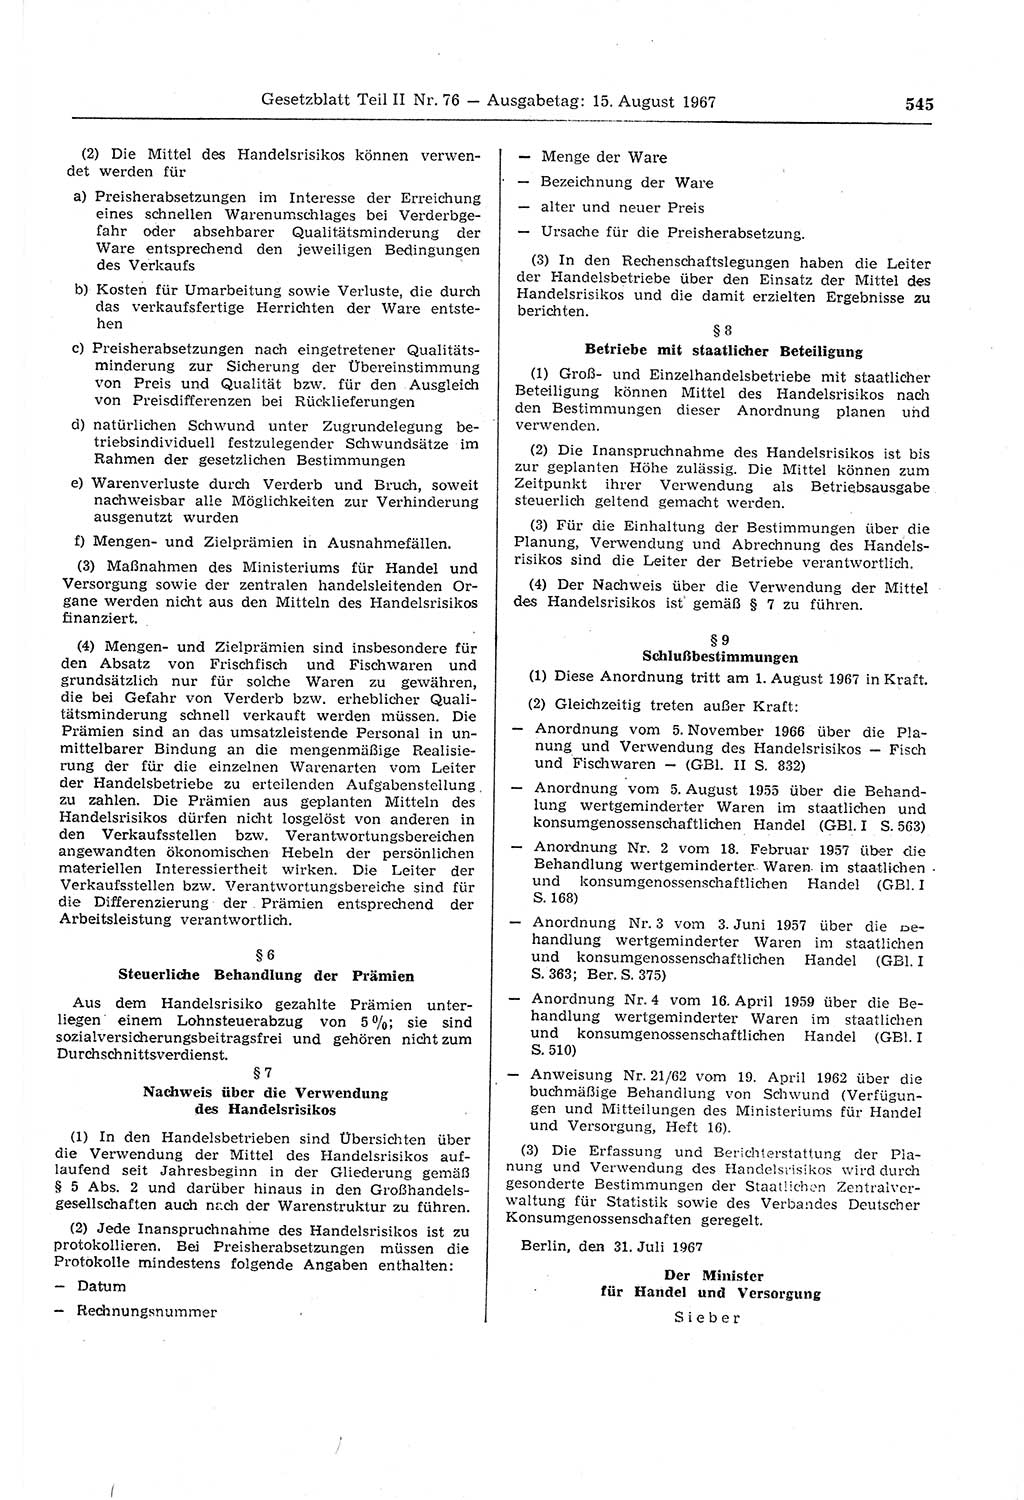 Gesetzblatt (GBl.) der Deutschen Demokratischen Republik (DDR) Teil ⅠⅠ 1967, Seite 545 (GBl. DDR ⅠⅠ 1967, S. 545)